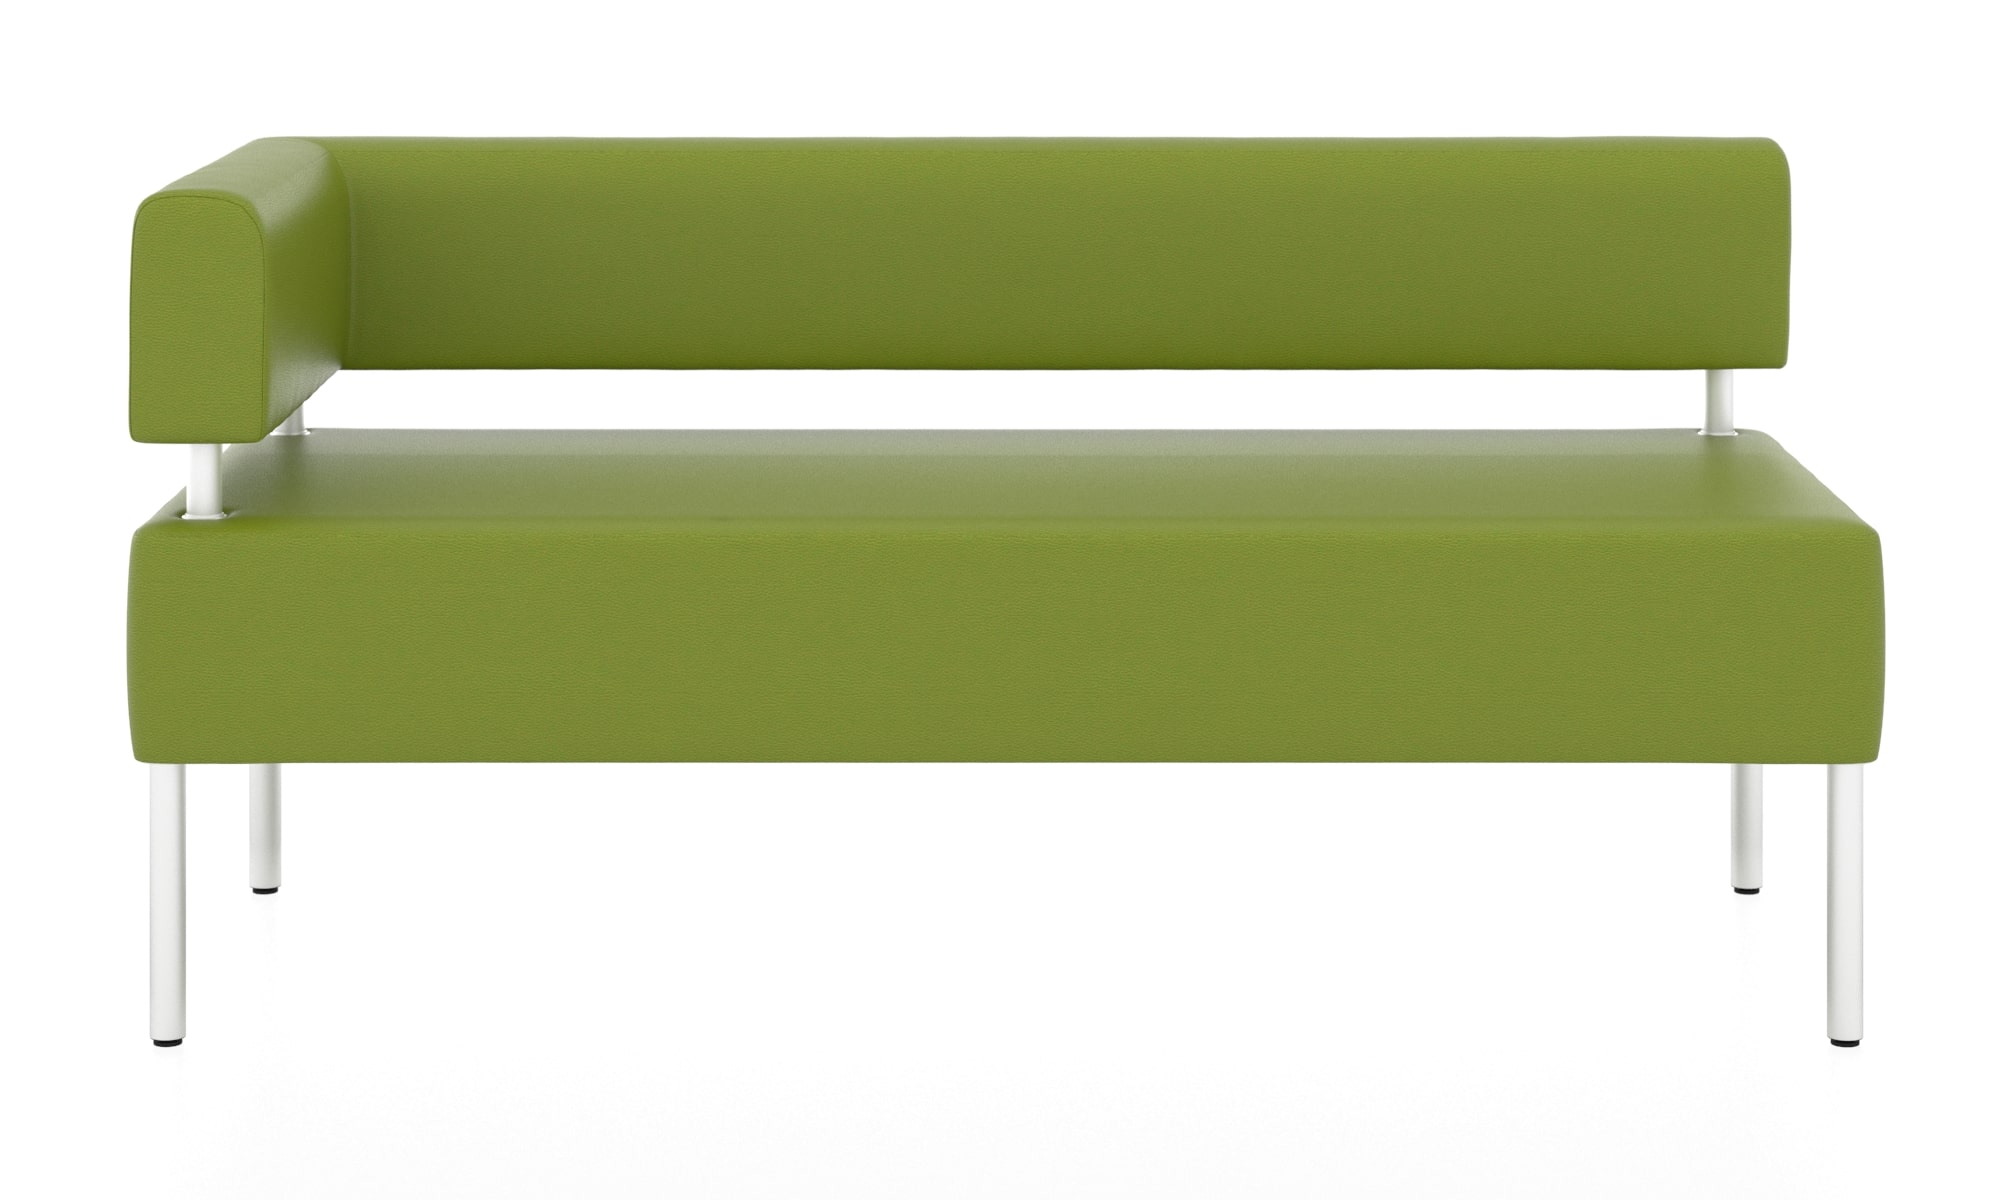 Модульная секция. 3х местный угловой модуль. Обивка из кожзама зеленого цвета (euroline 1131).